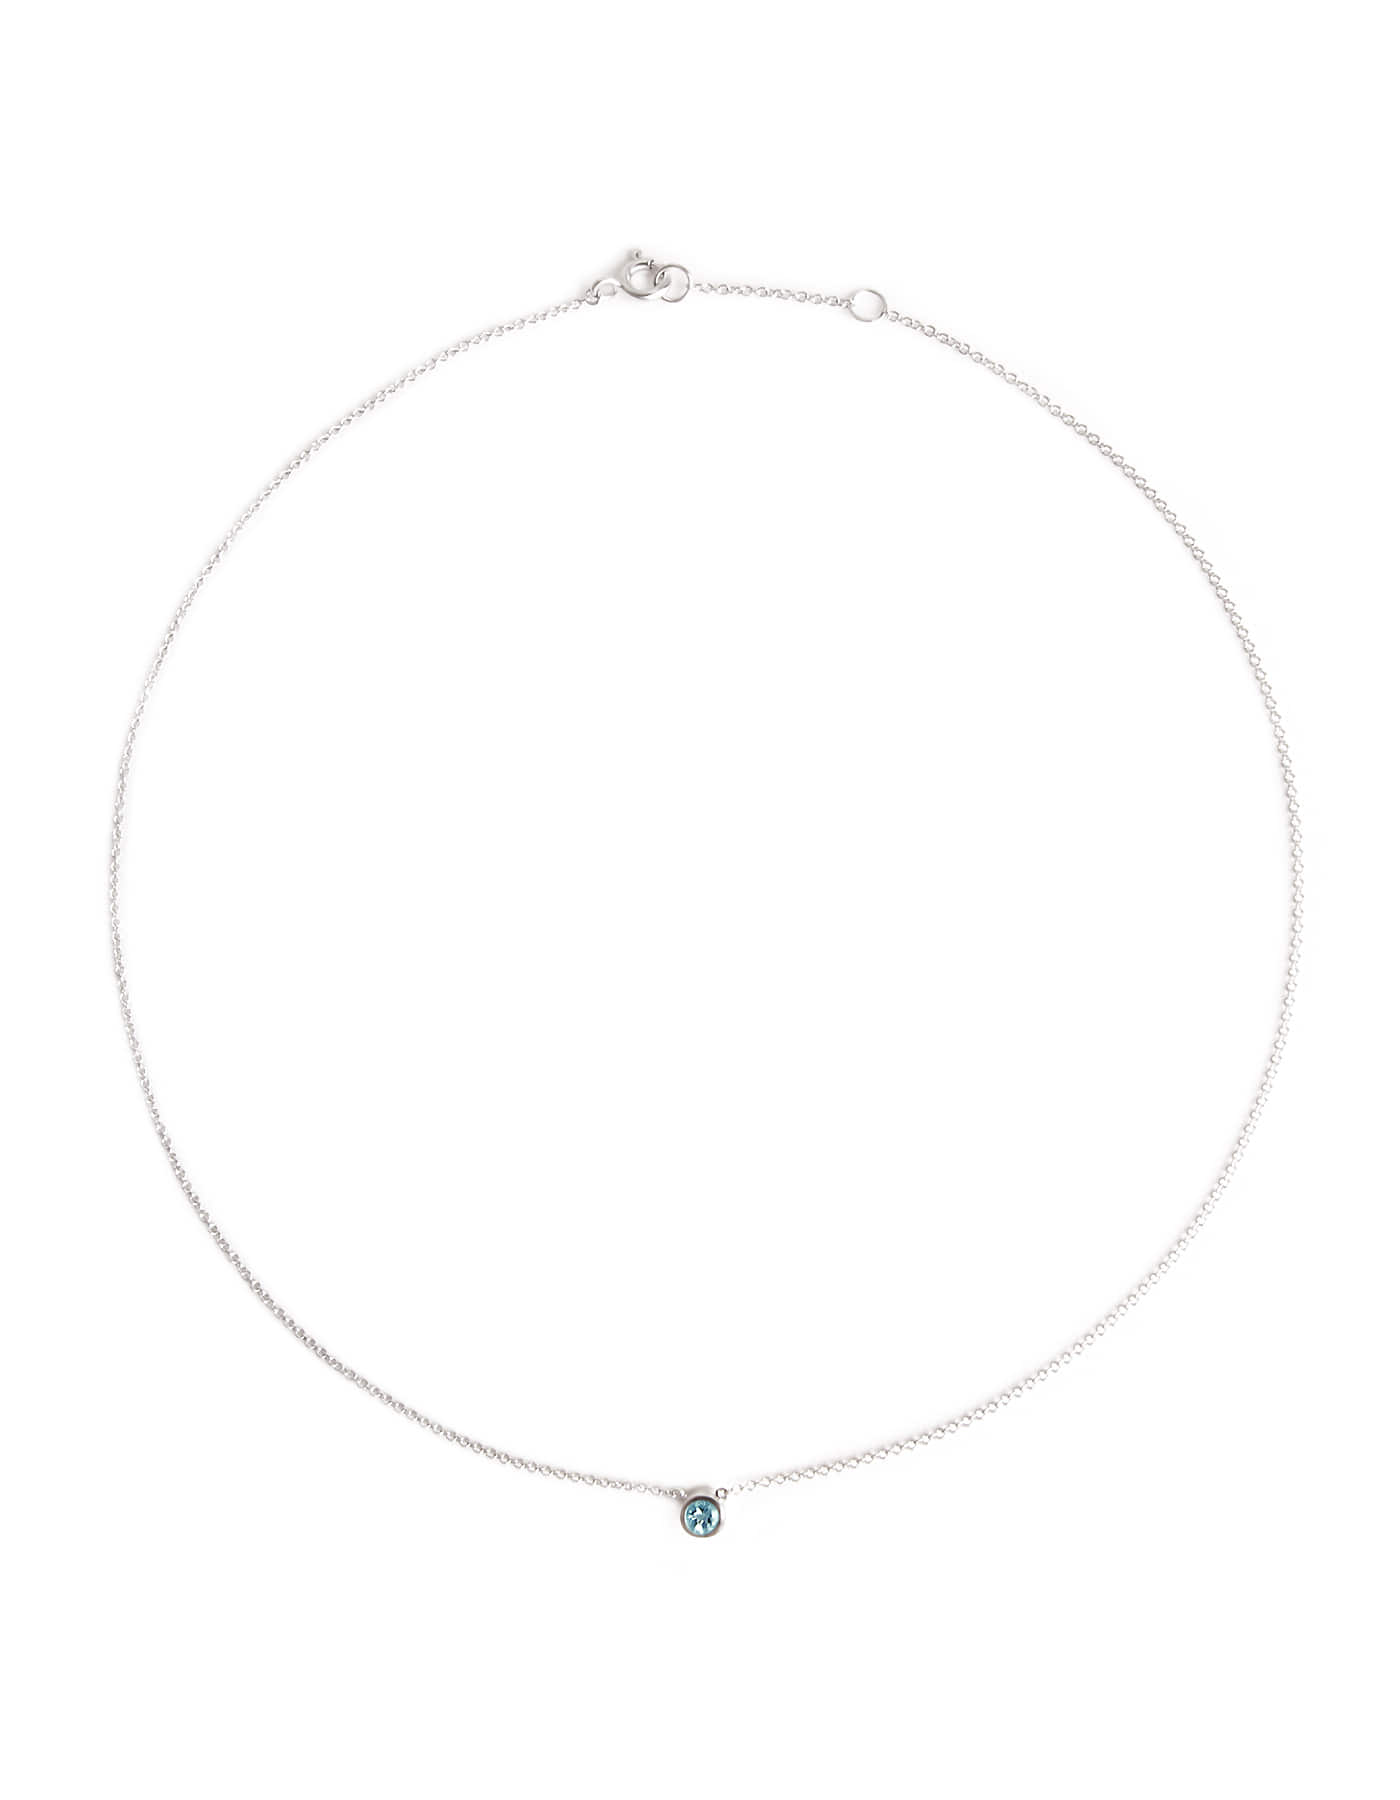 [14k] Blue Topaz Necklace